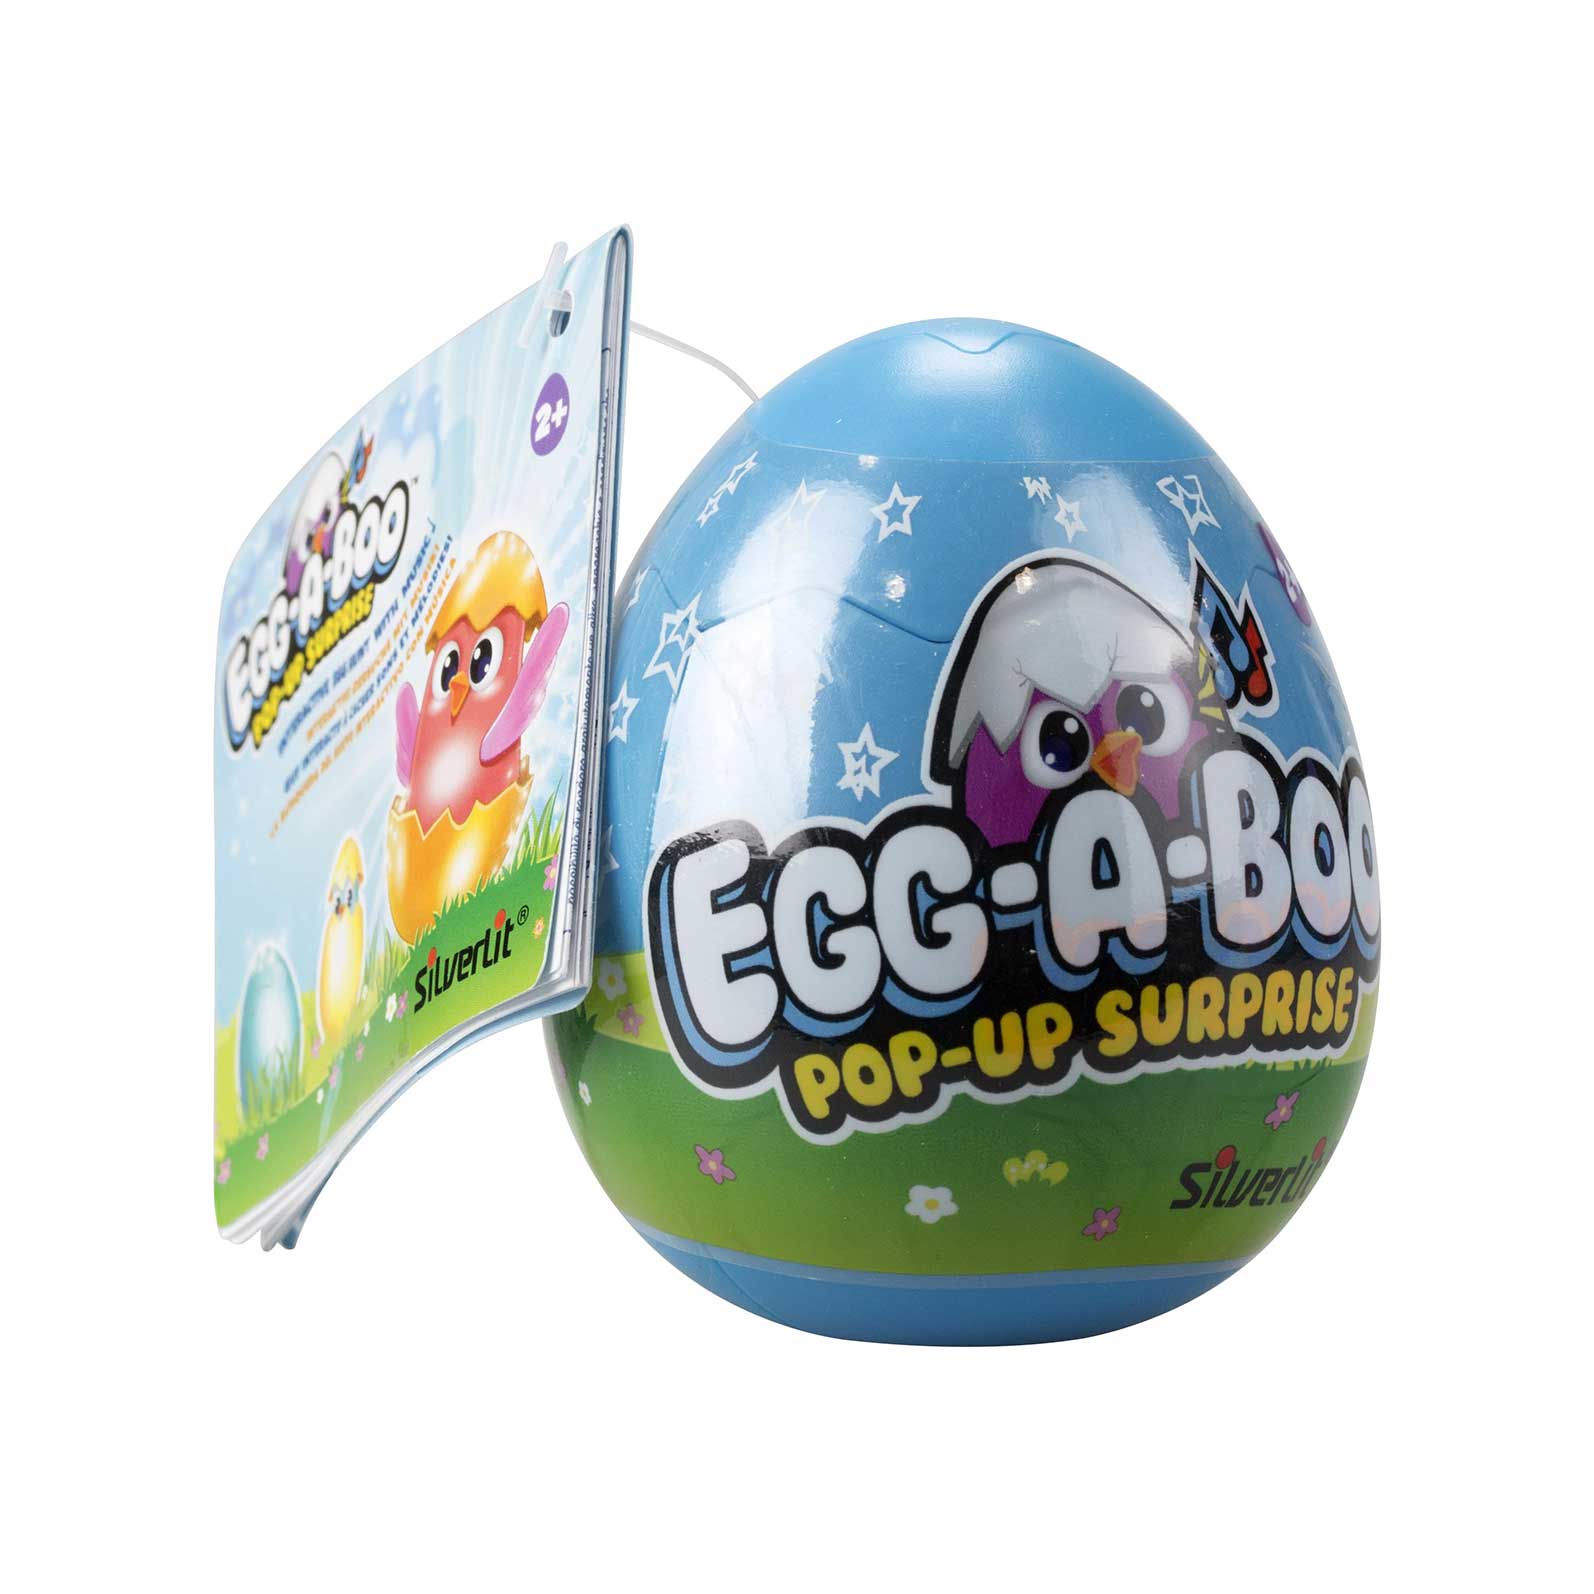 Egg_A_Boo